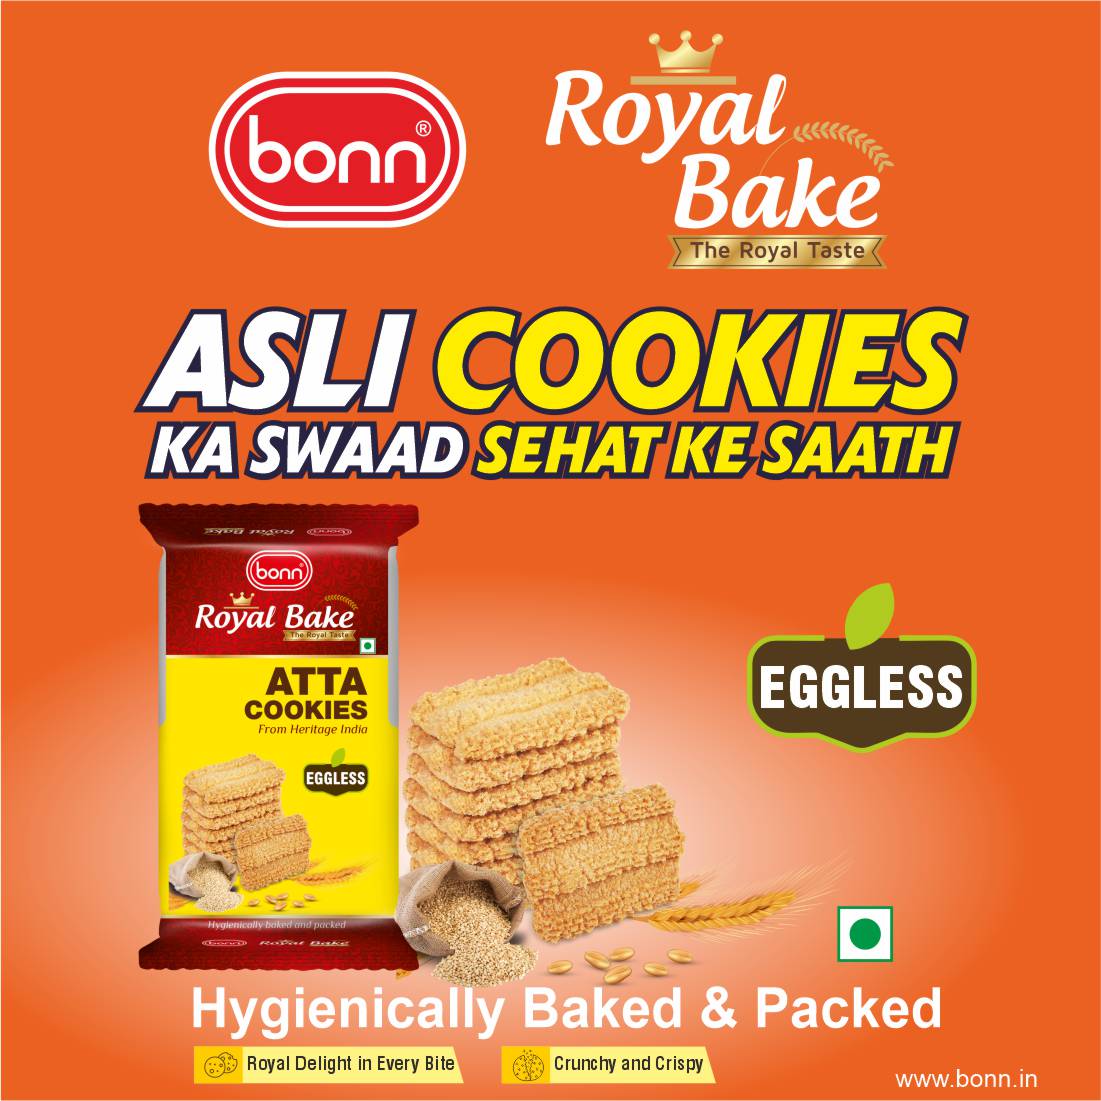 Royal Bake Atta Cookies by Bonn